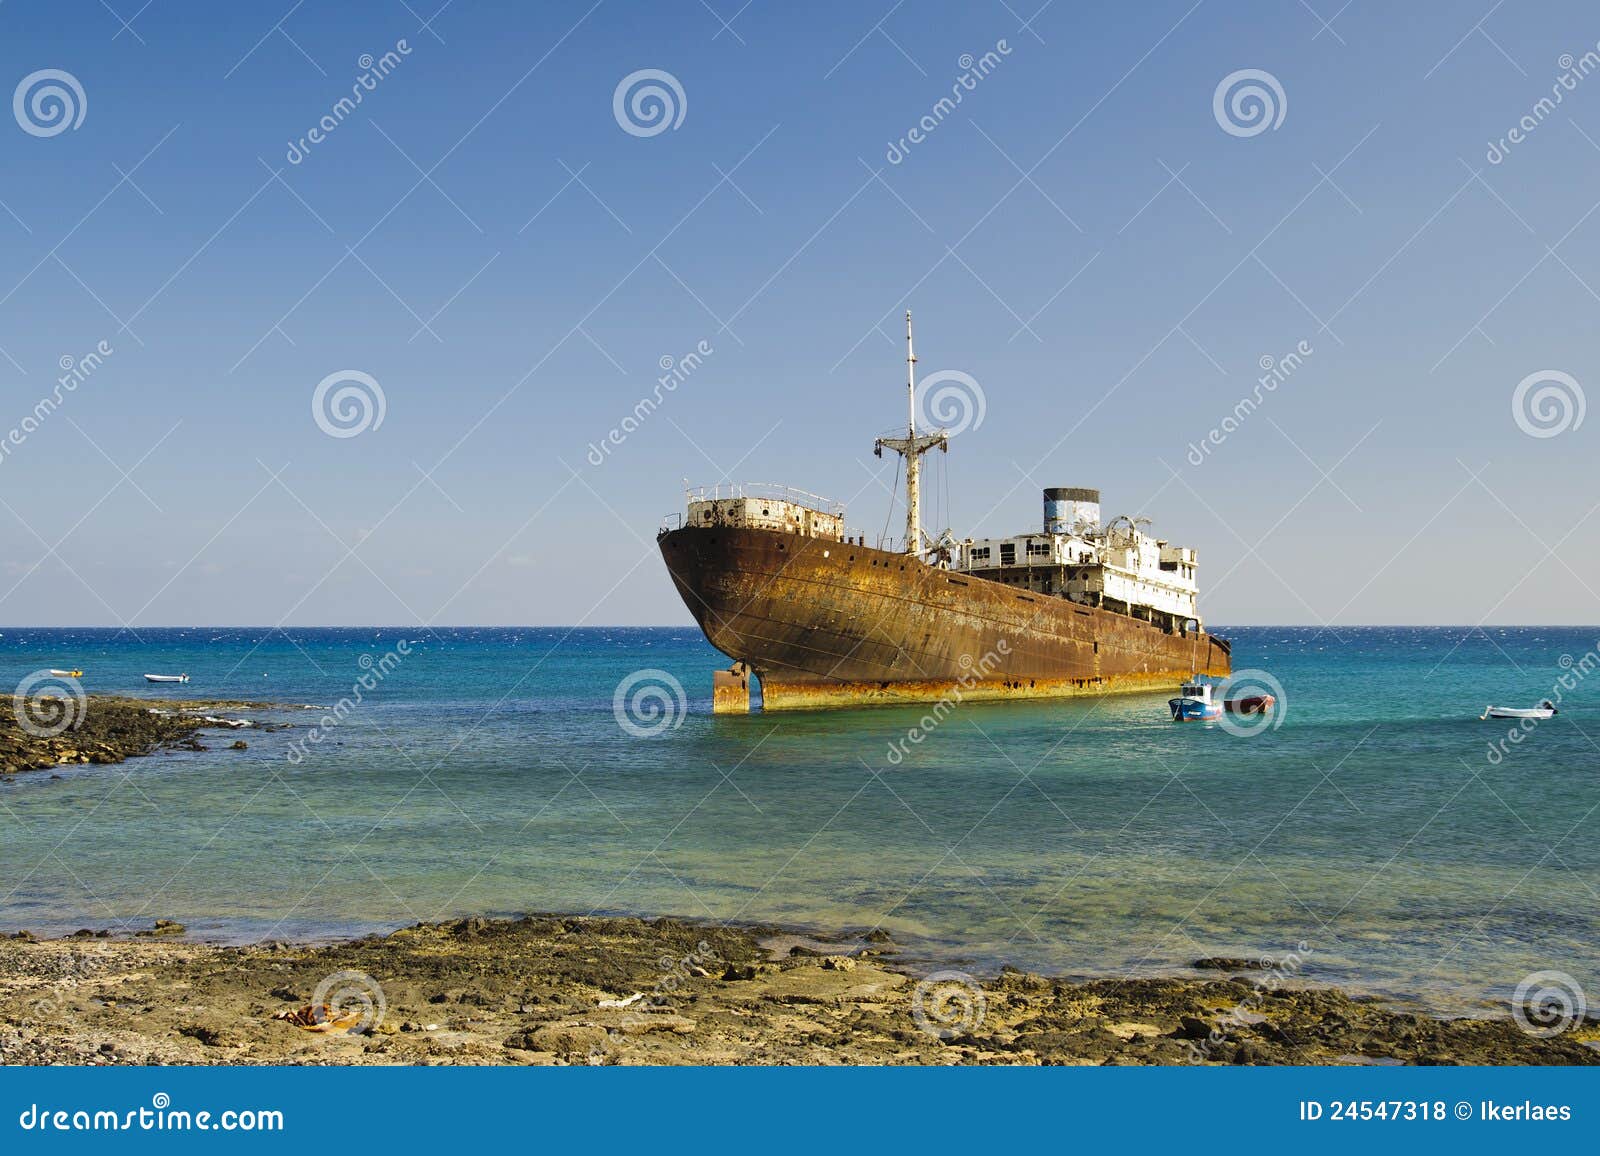 shipwreck in arrecife (lanzarote)